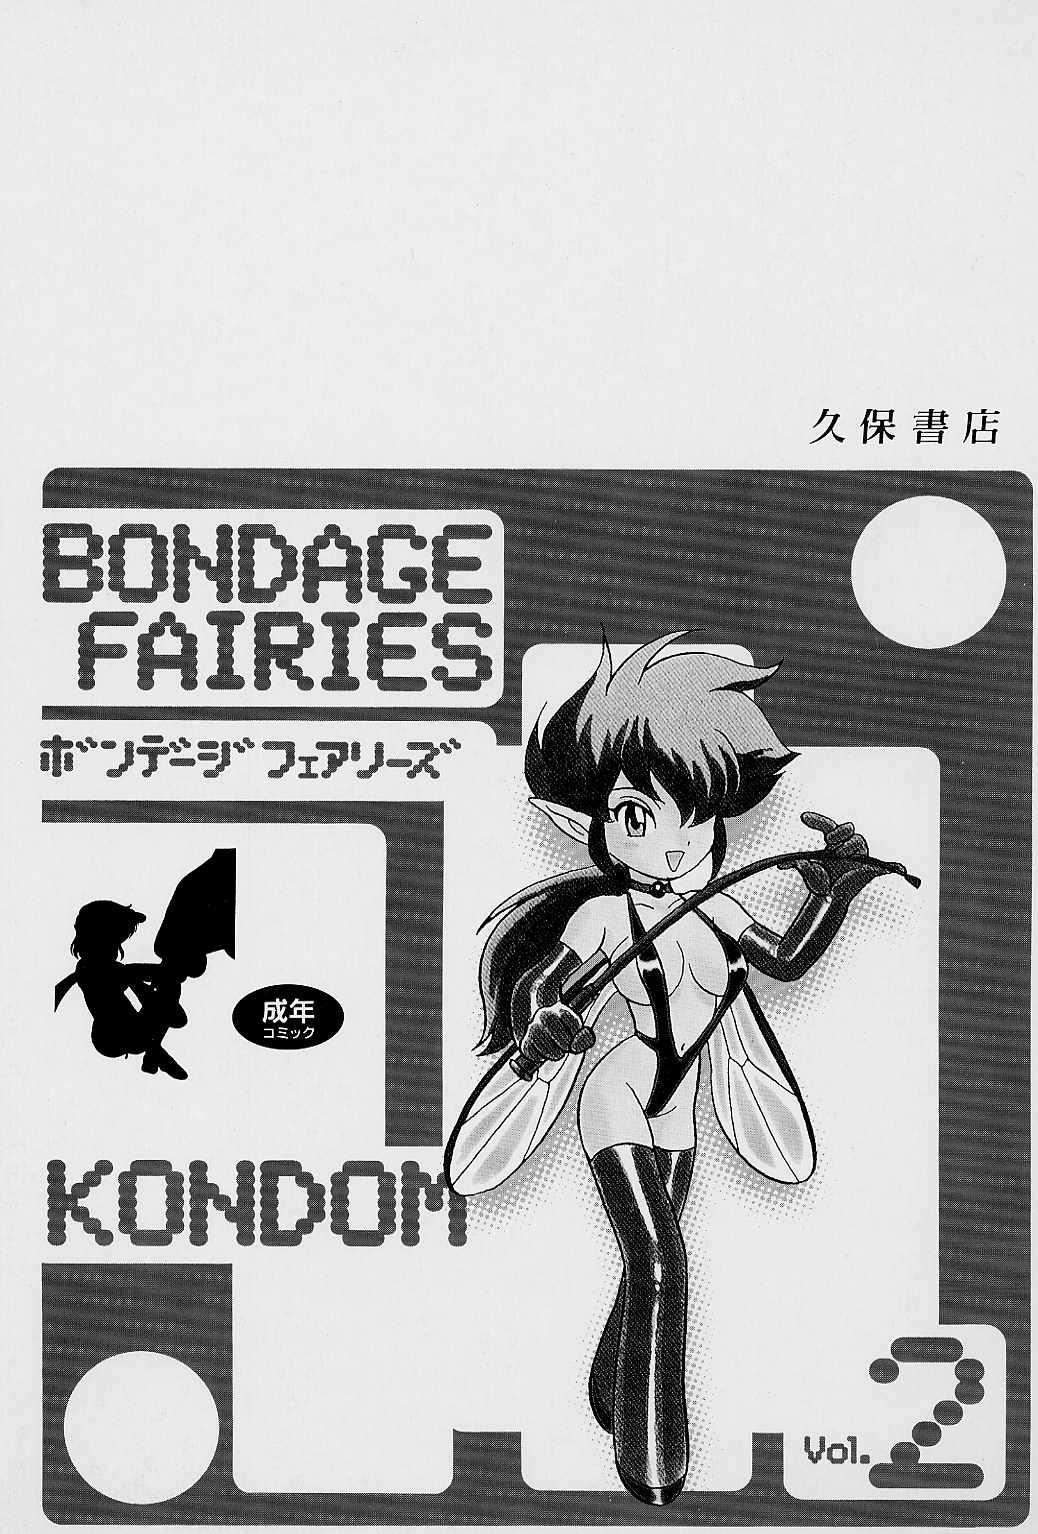 Club Bondage Fairies Vol. 2 Femdom - Page 166